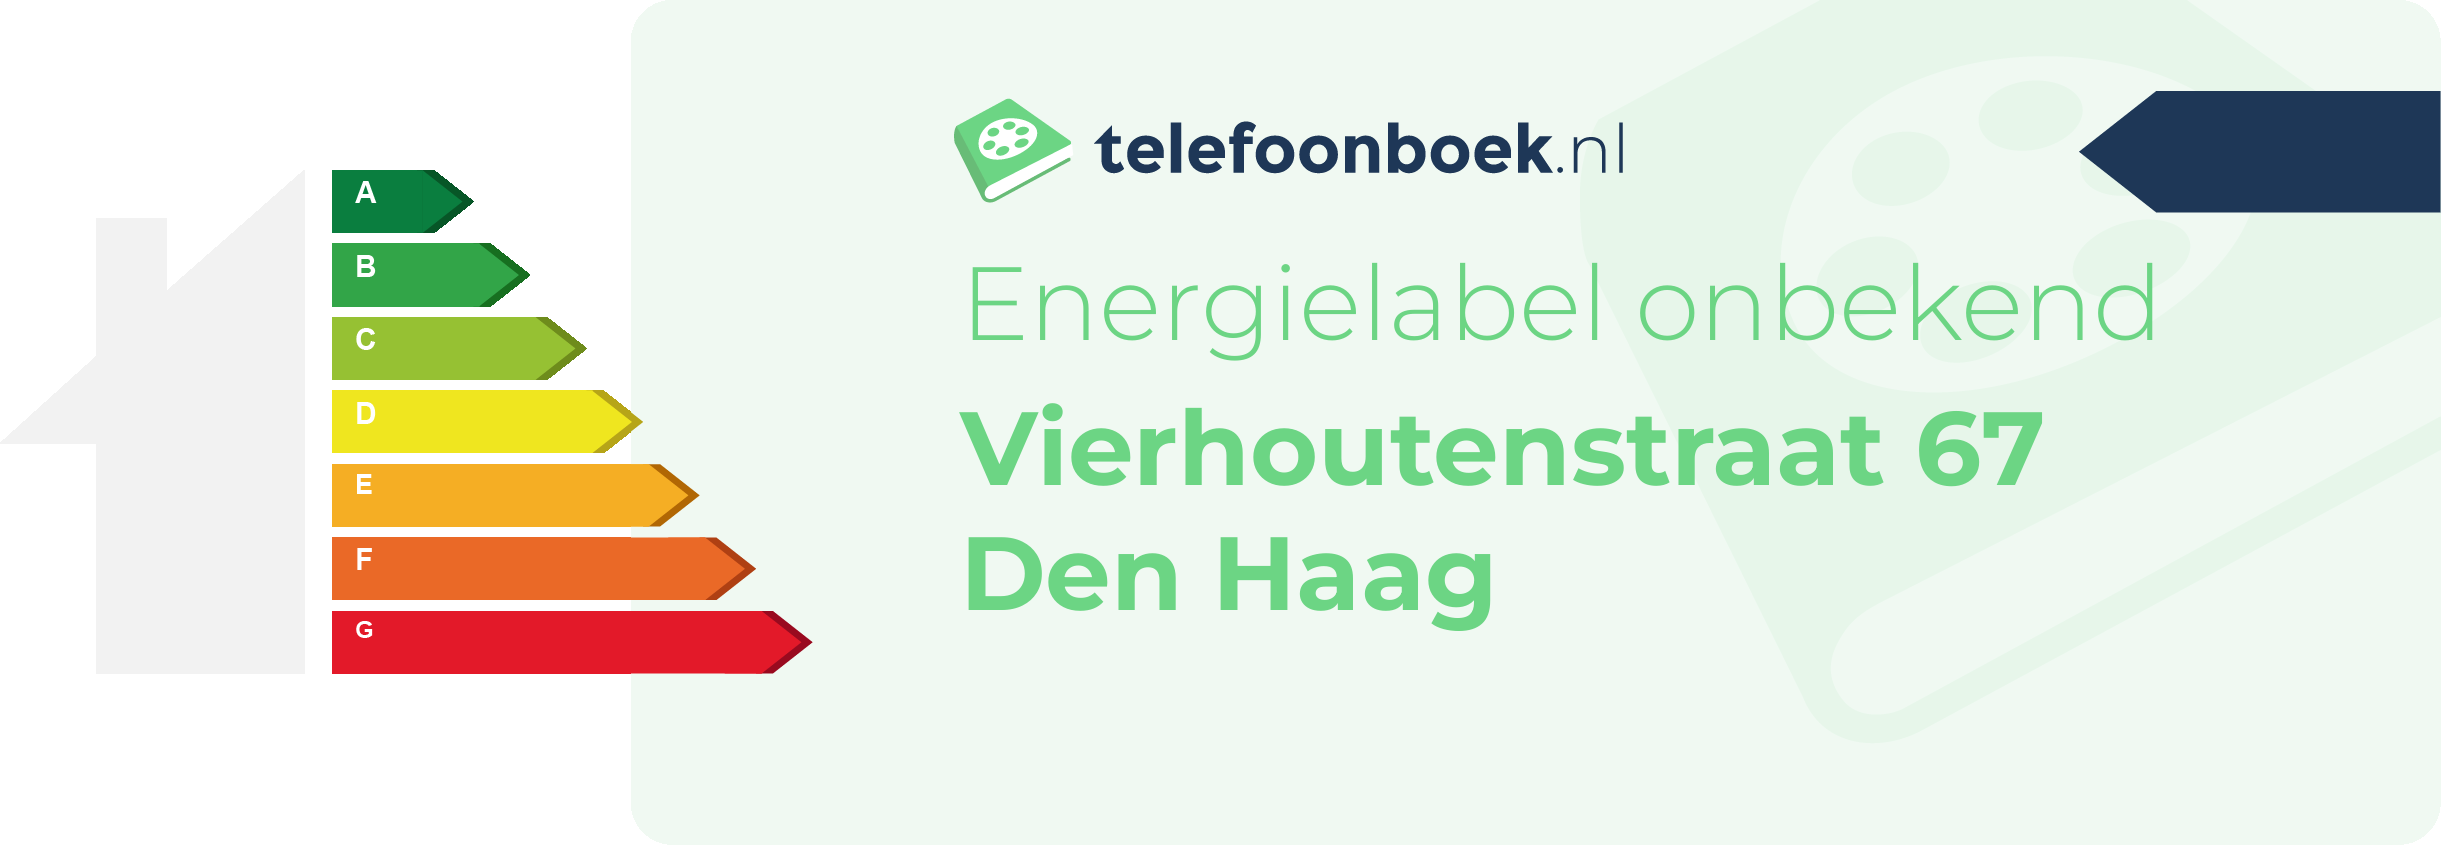 Energielabel Vierhoutenstraat 67 Den Haag